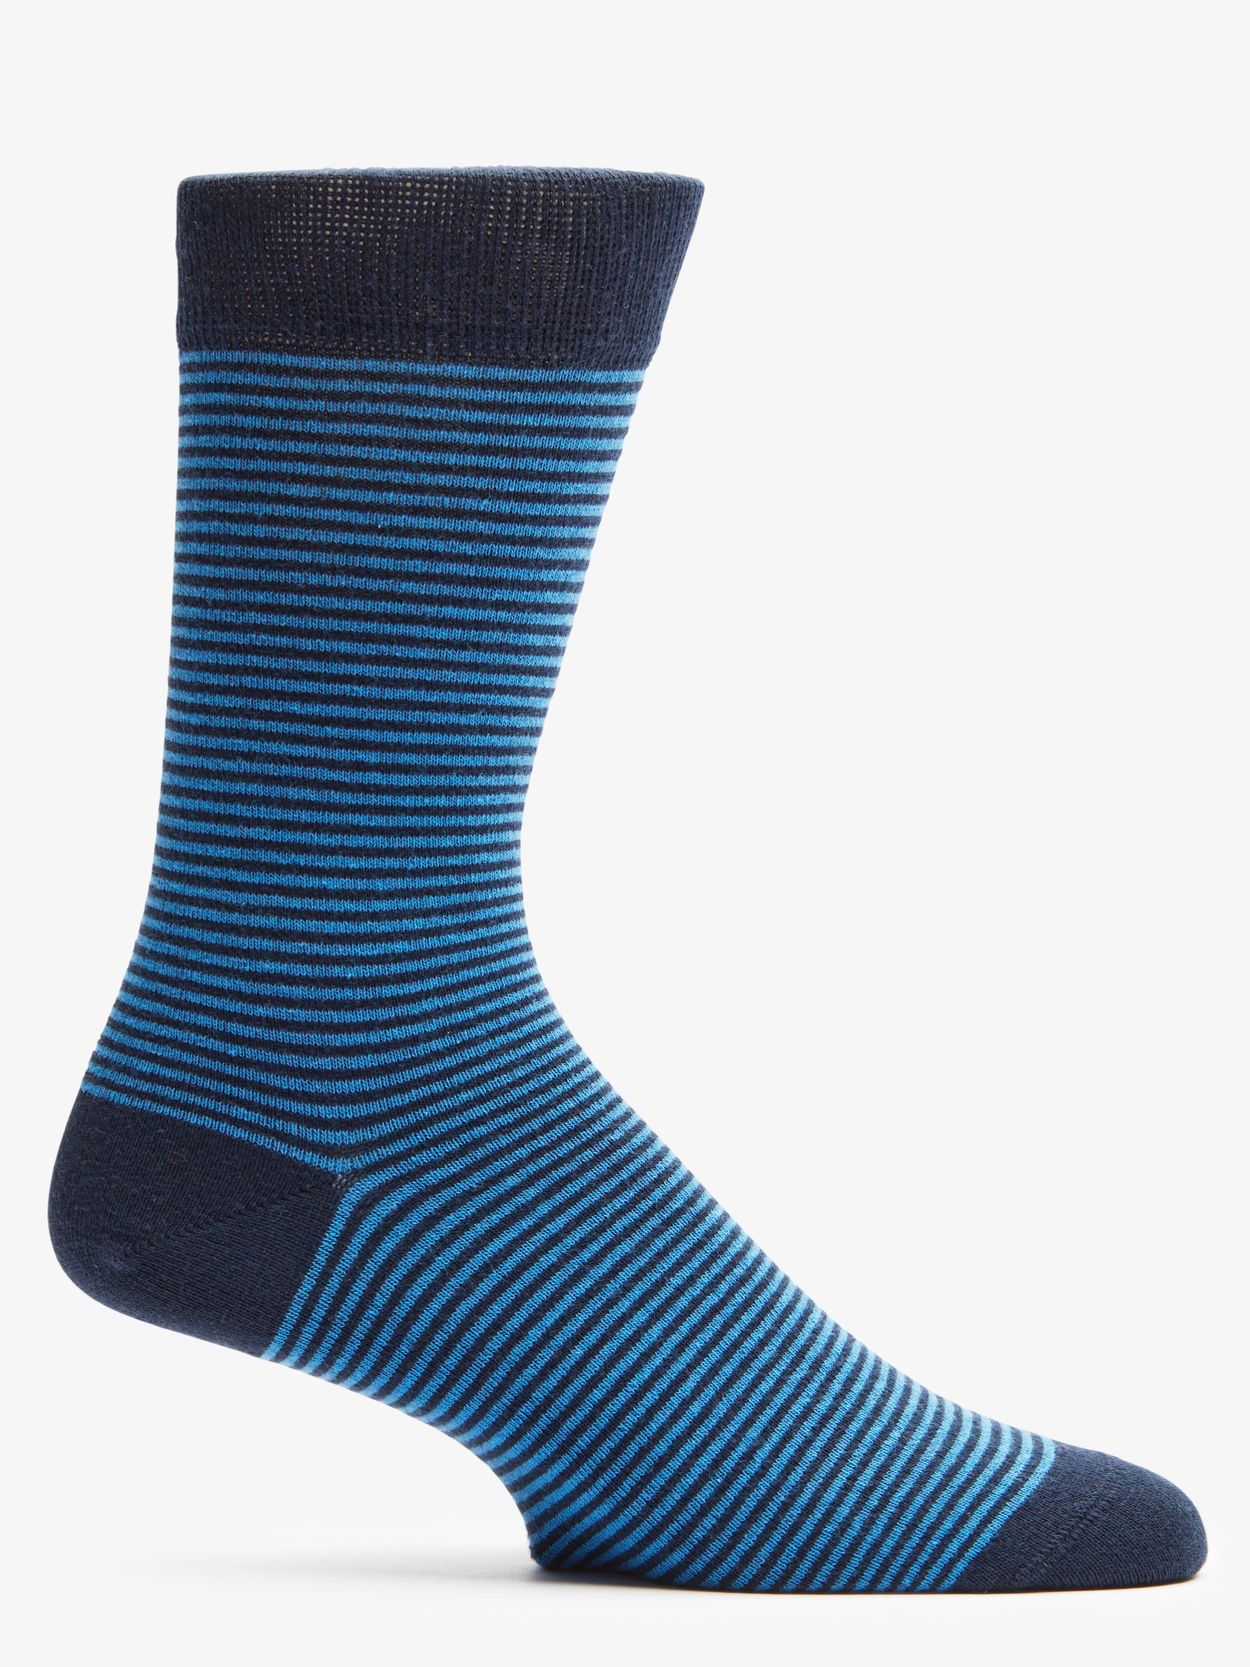 Blue & Cobolt Blue Socks Almeria